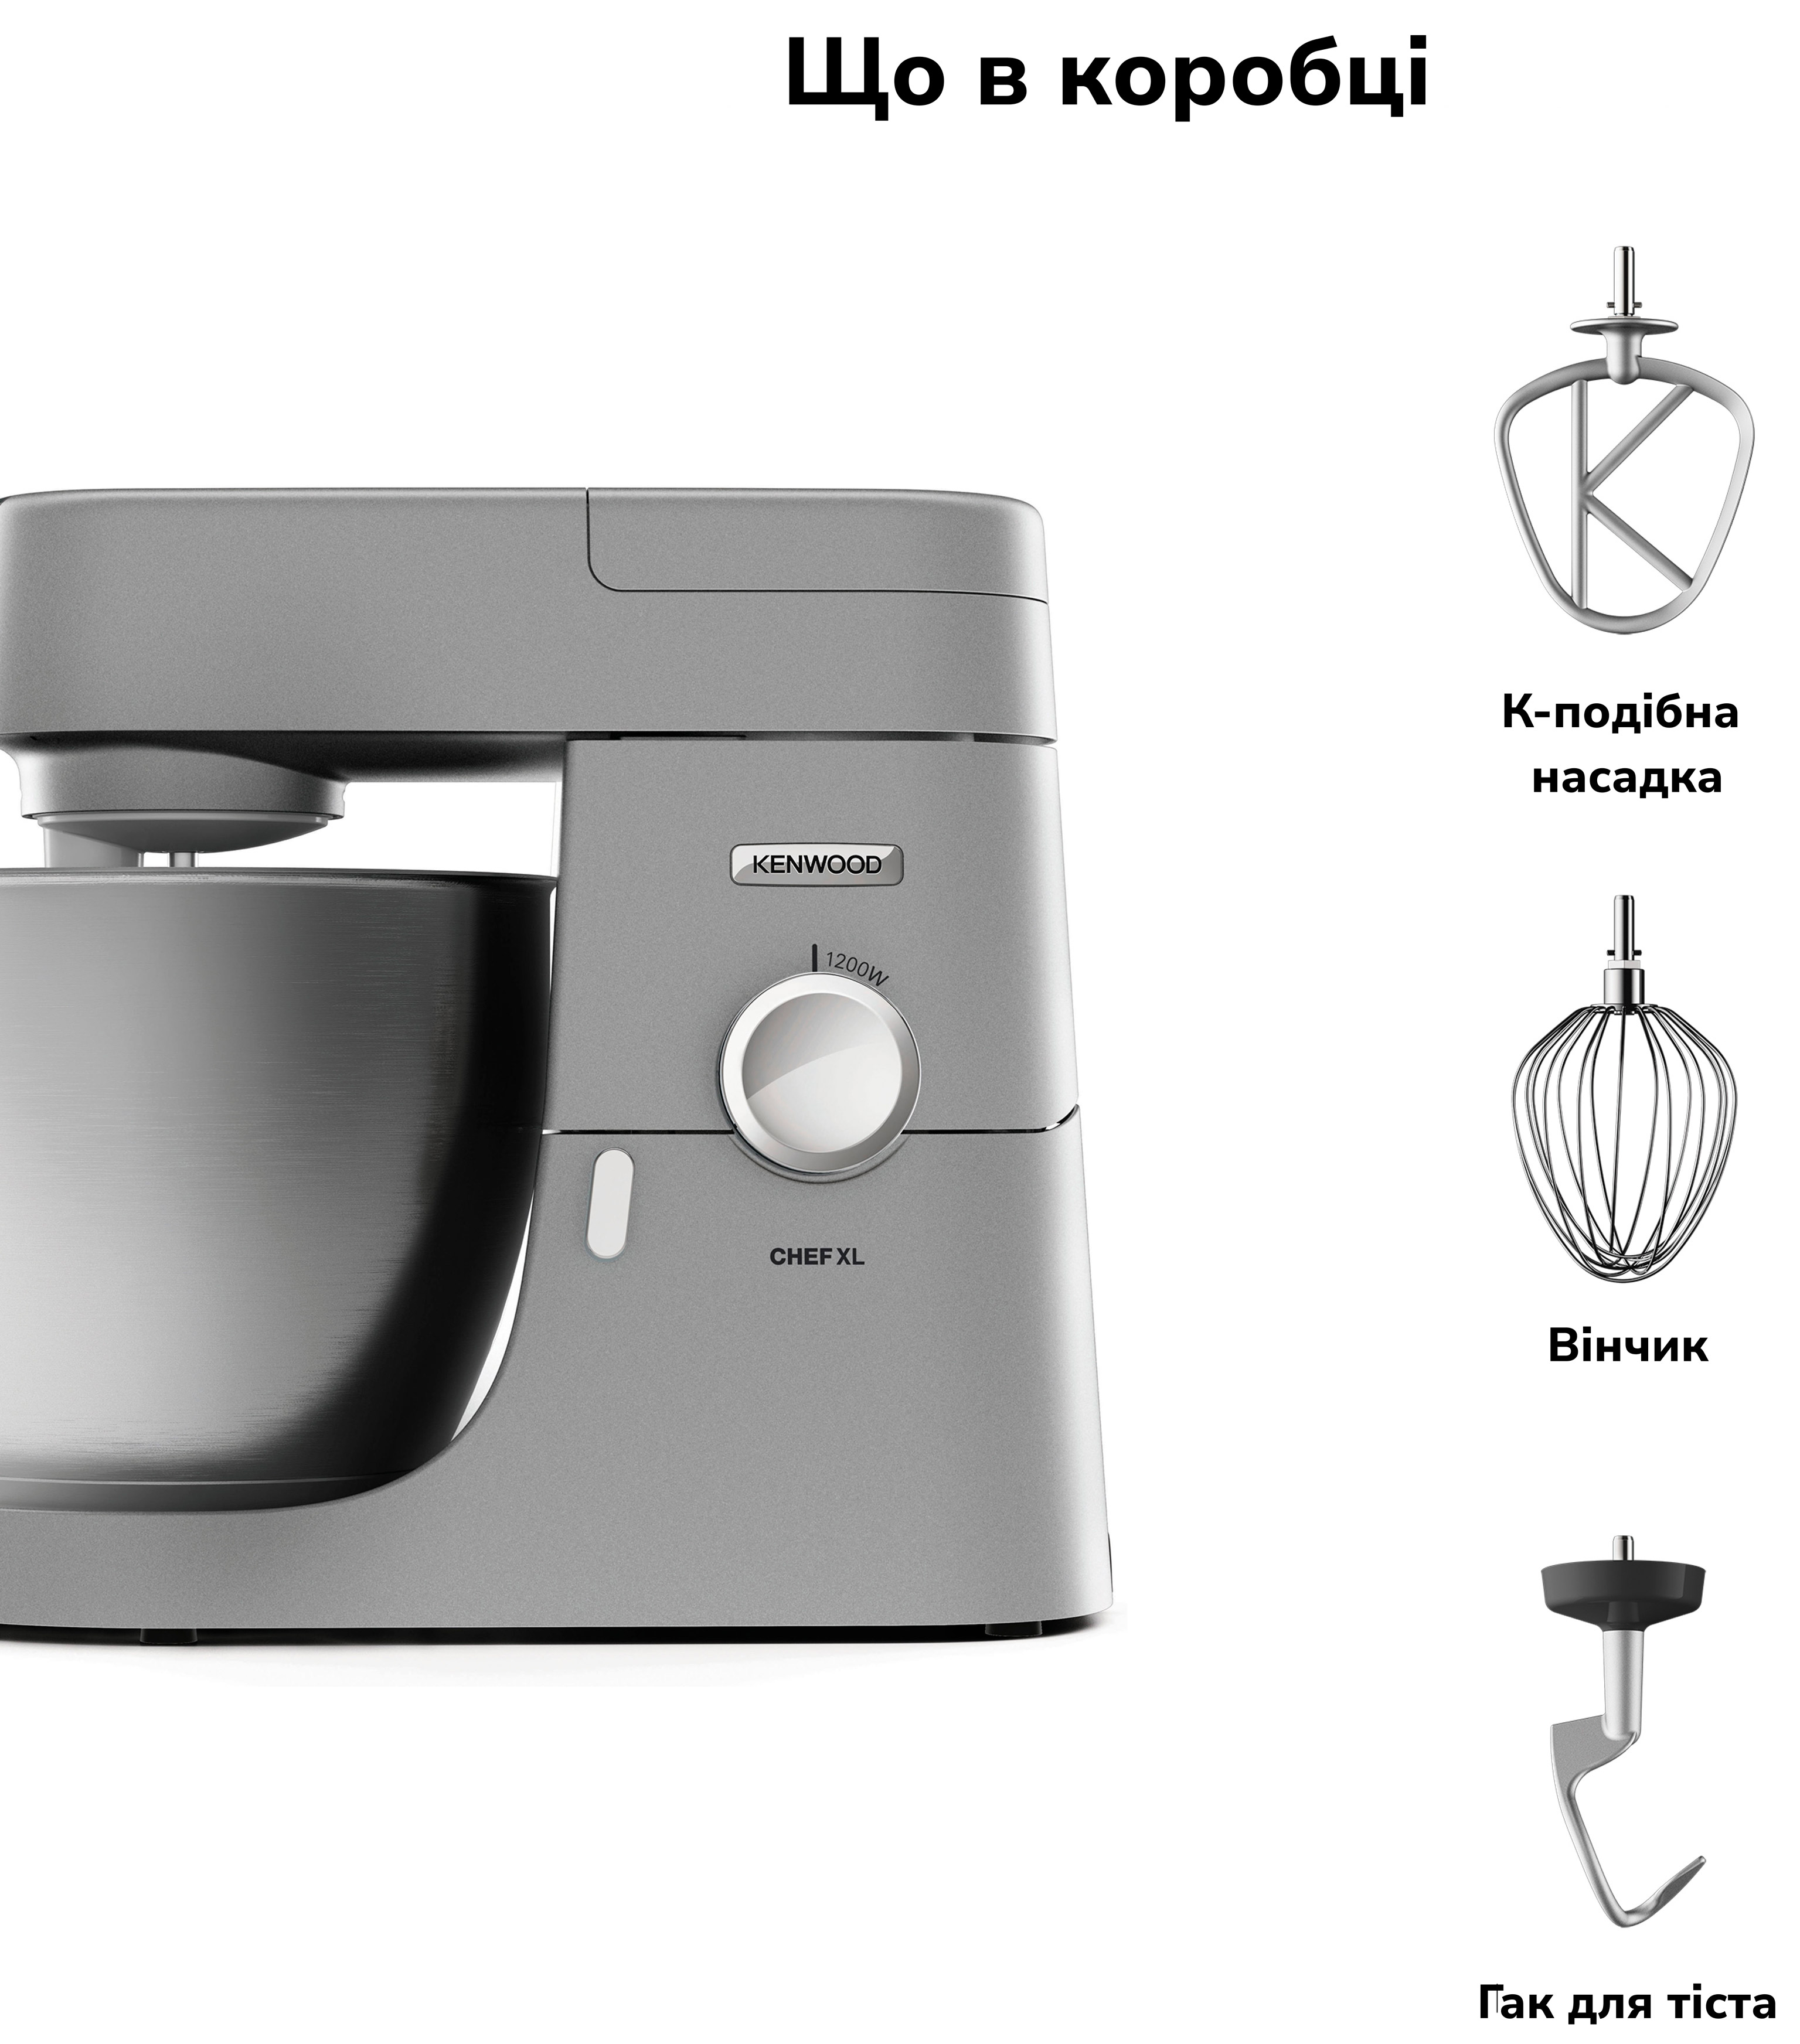 Кухонная машина Kenwood KVL 4100 S Chef XL характеристики - фотография 7